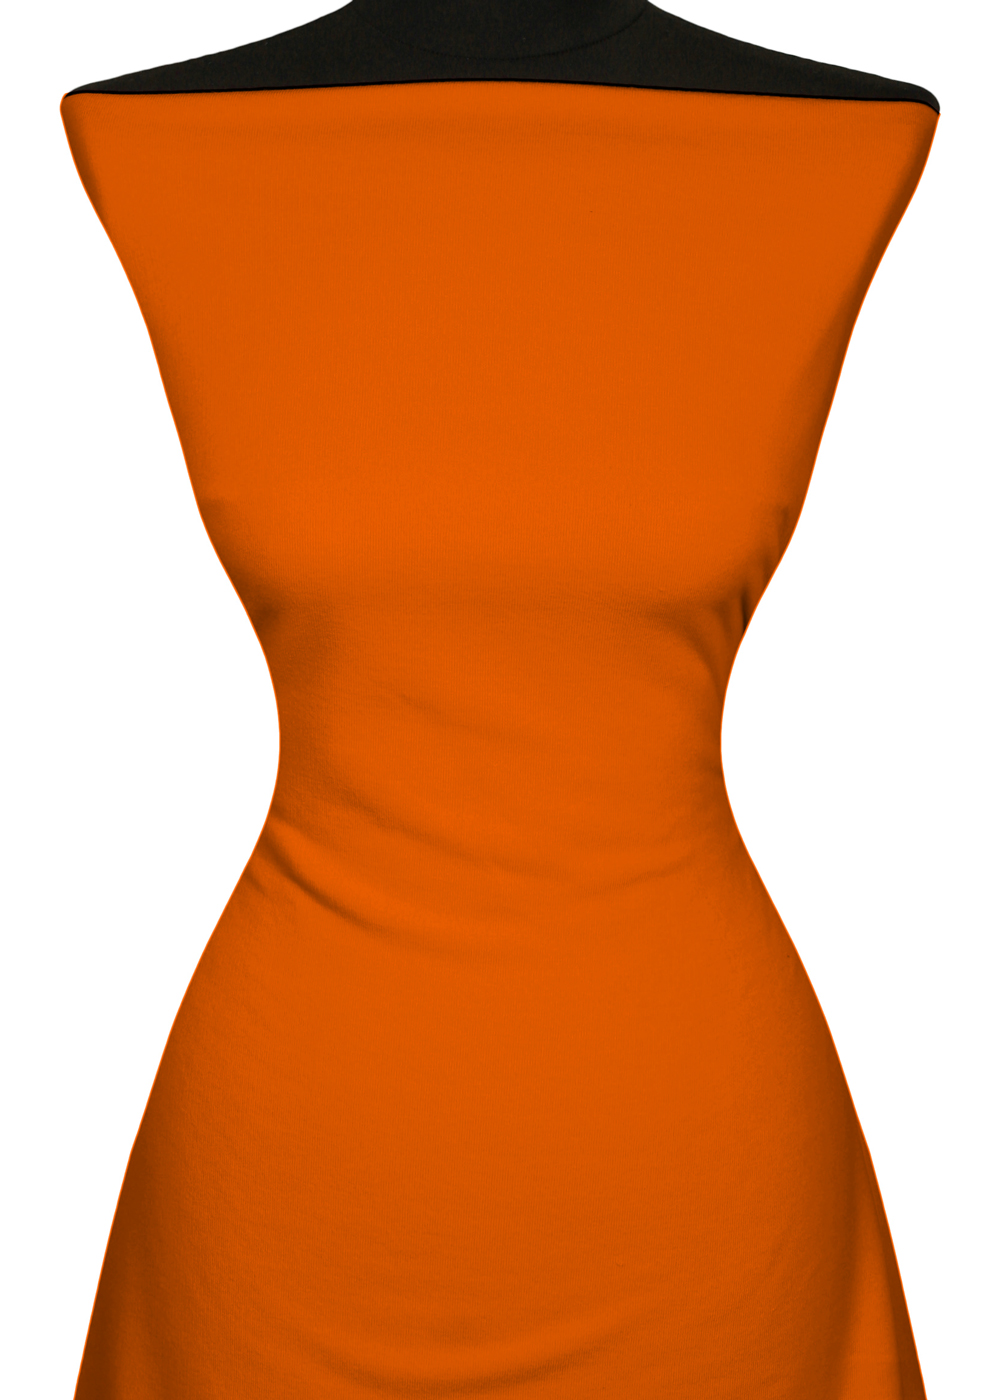 Teplkovina Classic (290g, bavlna s elastanom) - Oranov - Kliknutm na obrzok zatvorte -